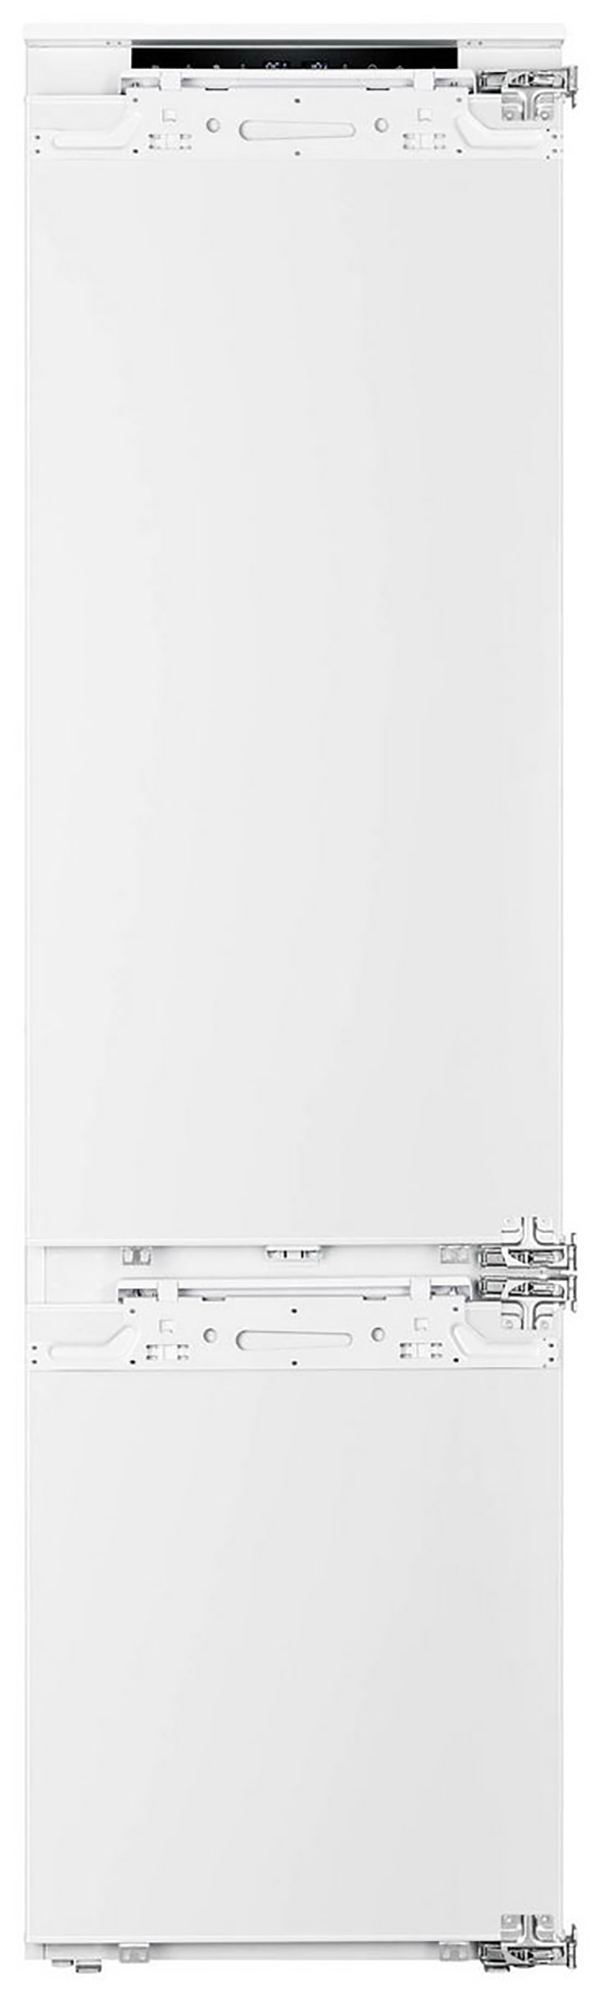 Встраиваемый холодильник Korting KSI 19547 CFNFZ белый встраиваемый холодильник korting ksi 19547 cfnfz белый